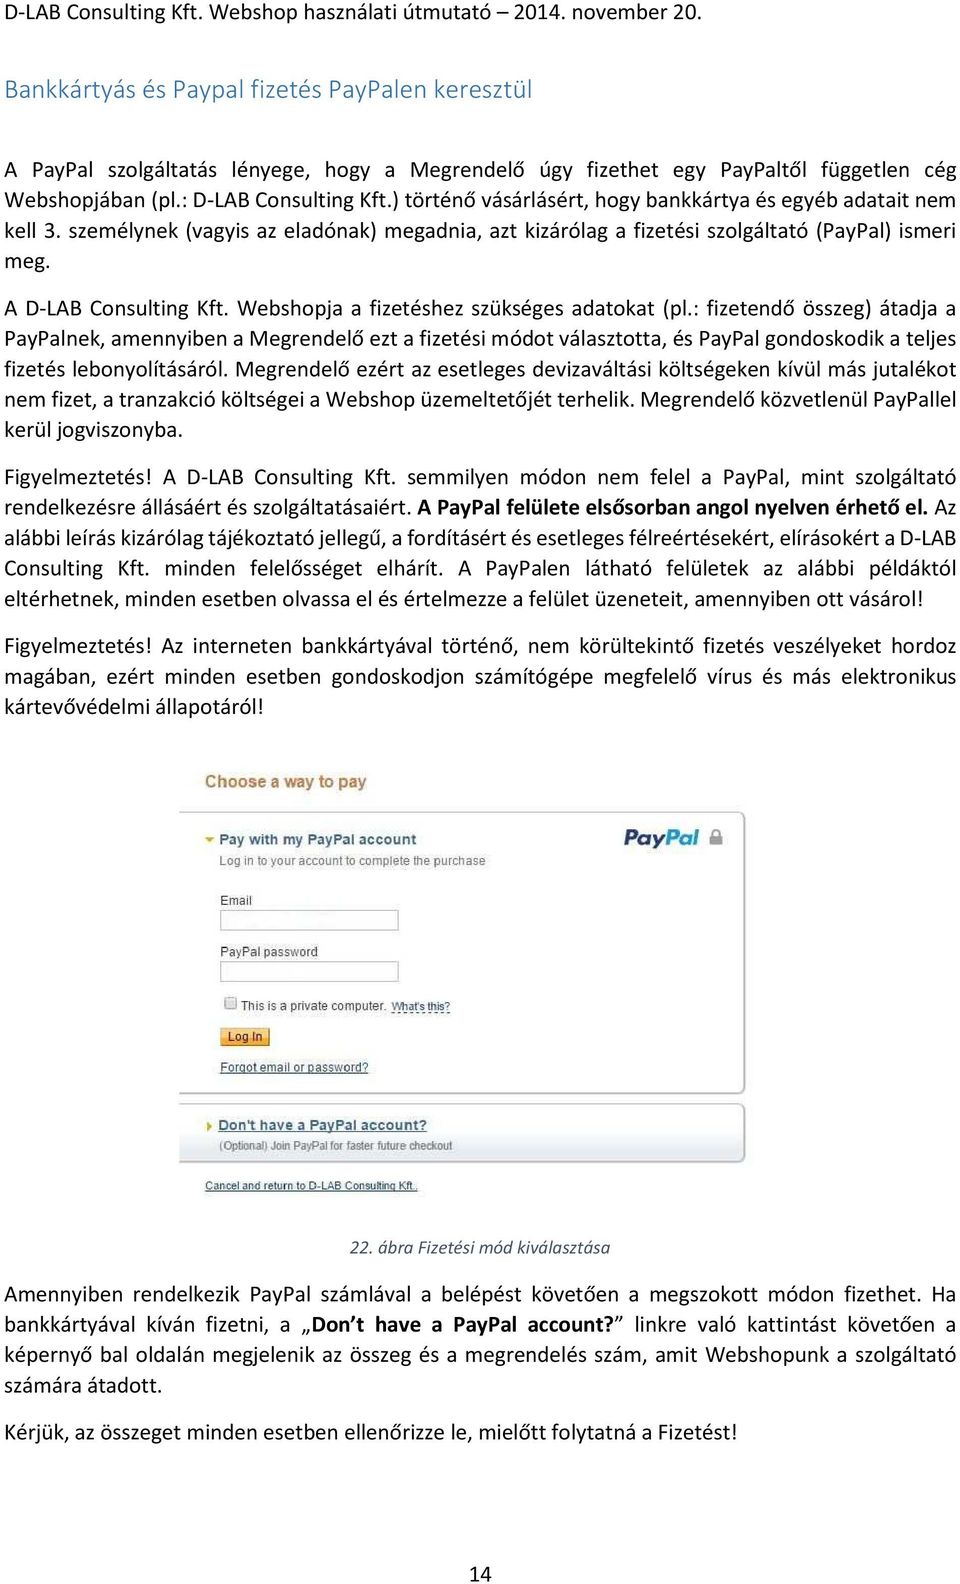 Webshopja a fizetéshez szükséges adatokat (pl.: fizetendő összeg) átadja a PayPalnek, amennyiben a Megrendelő ezt a fizetési módot választotta, és PayPal gondoskodik a teljes fizetés lebonyolításáról.